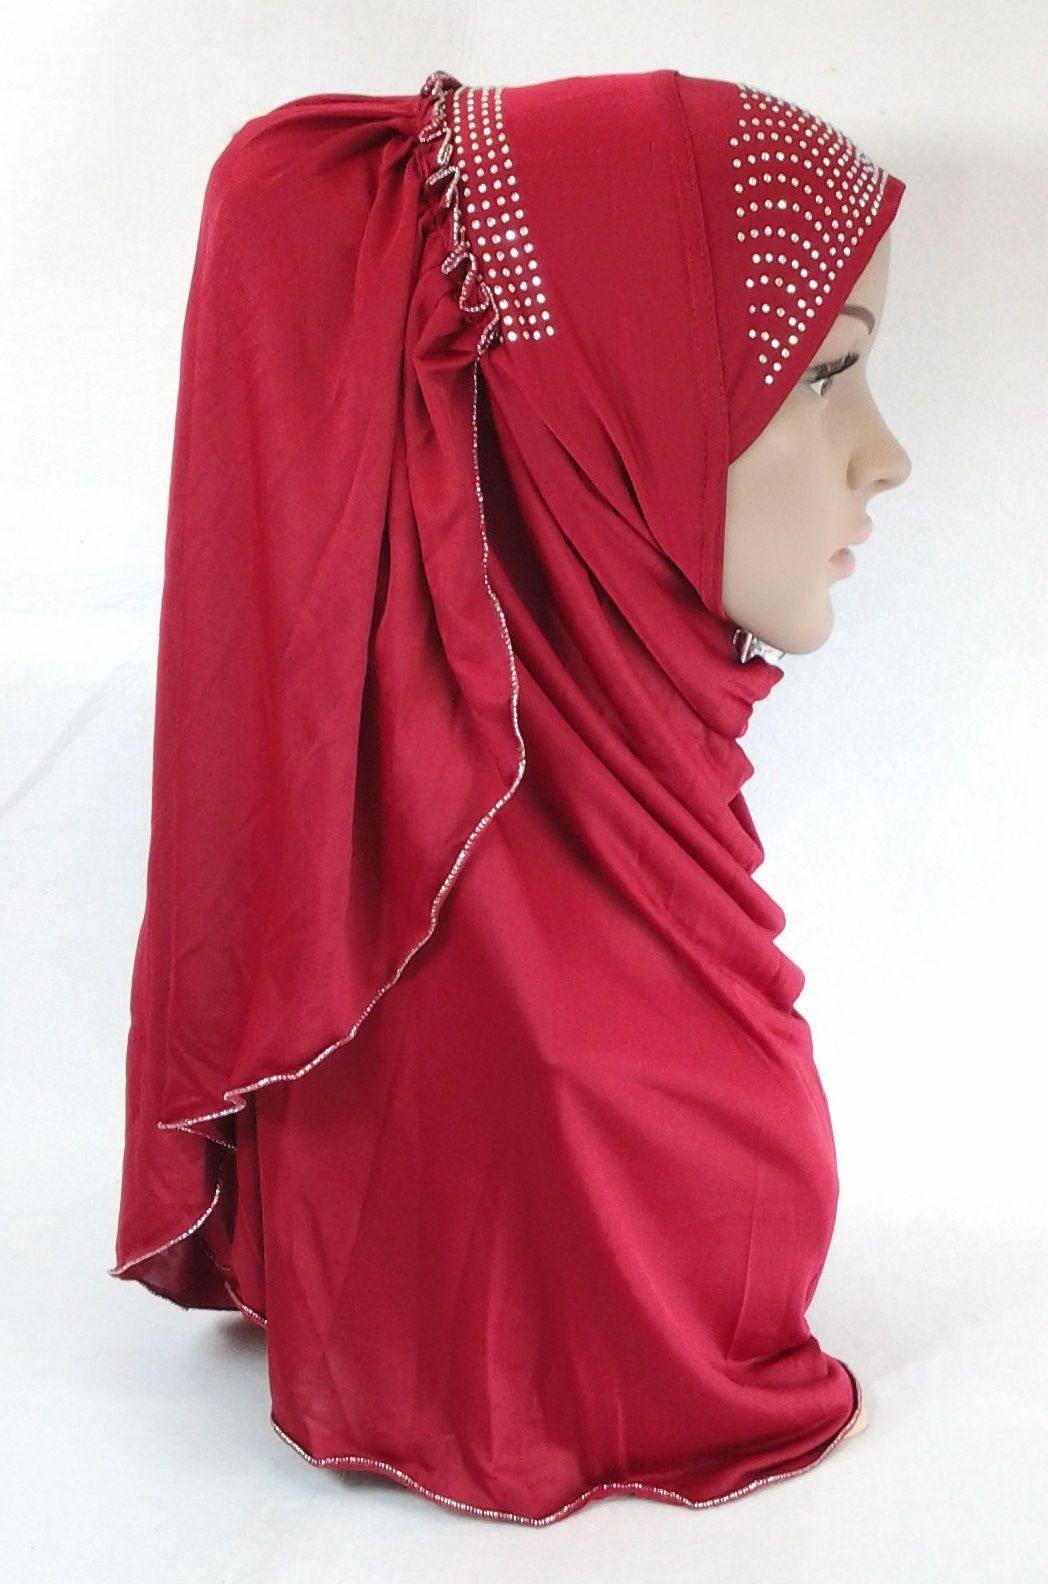 Pull-on Easy Muslim Hijab Fashion Islamic Scarf Viscose Ice Silk MLl061 - Arabian Shopping Zone